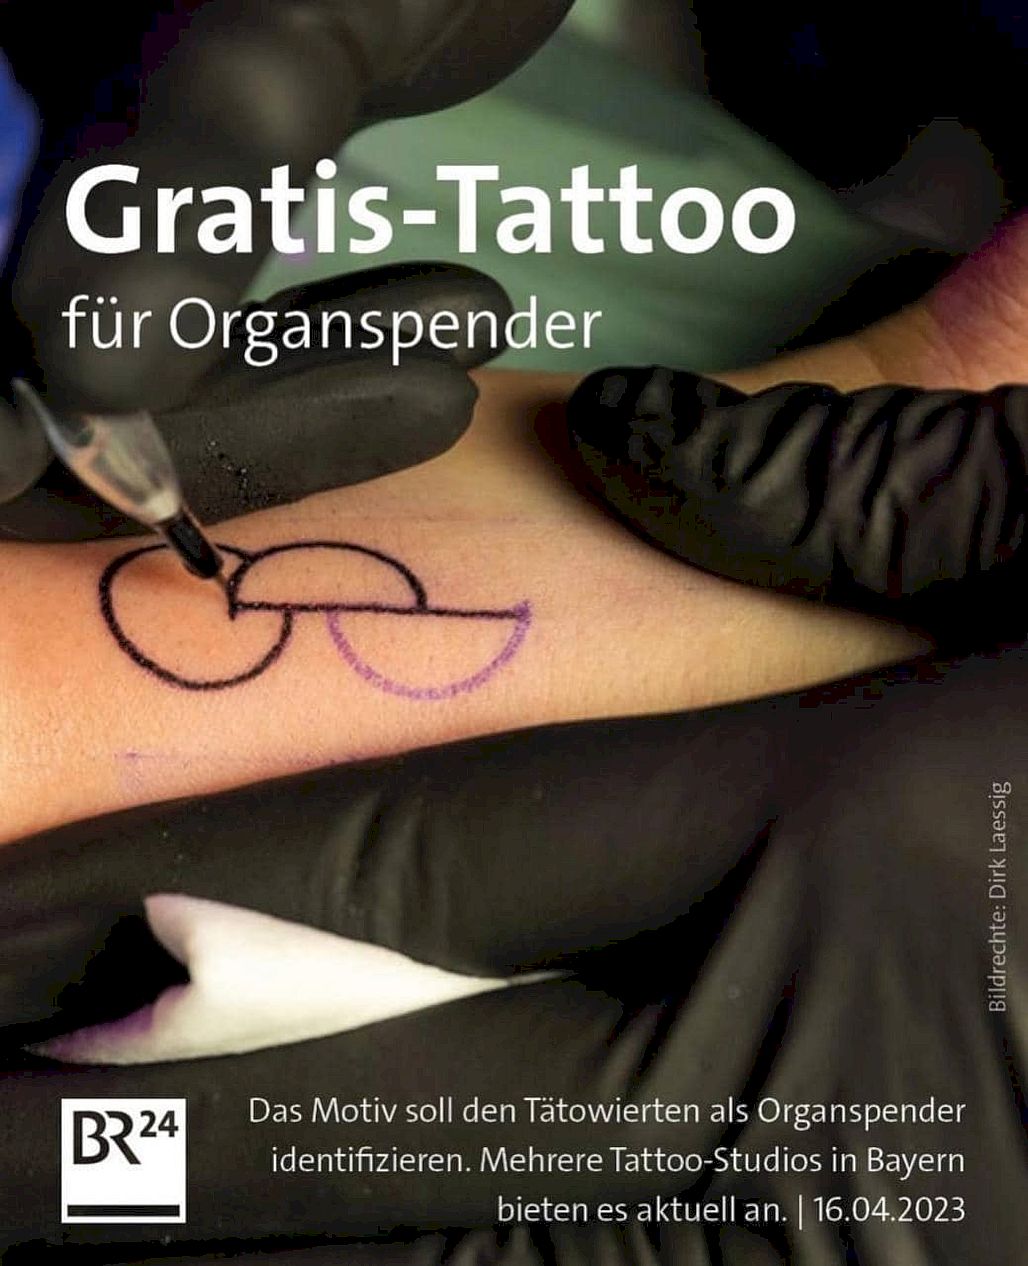 Tatouage gratuit pour les donneurs d'organes